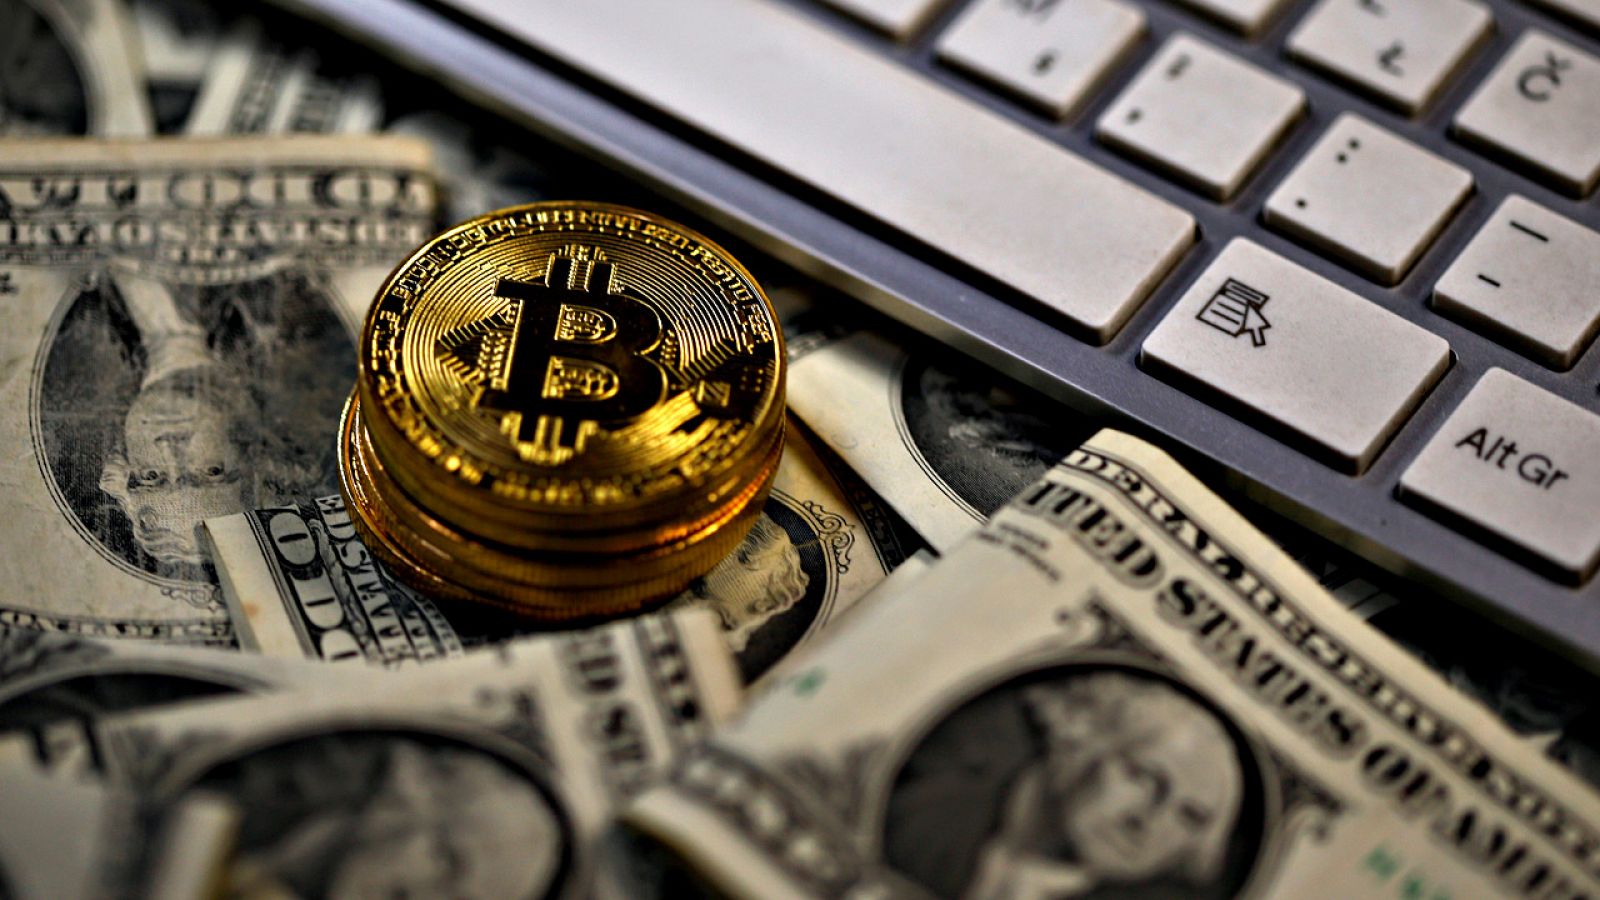 El precio del bitcóin se asoma a los 10.000 dólares tras las subidas de las últimas semanas